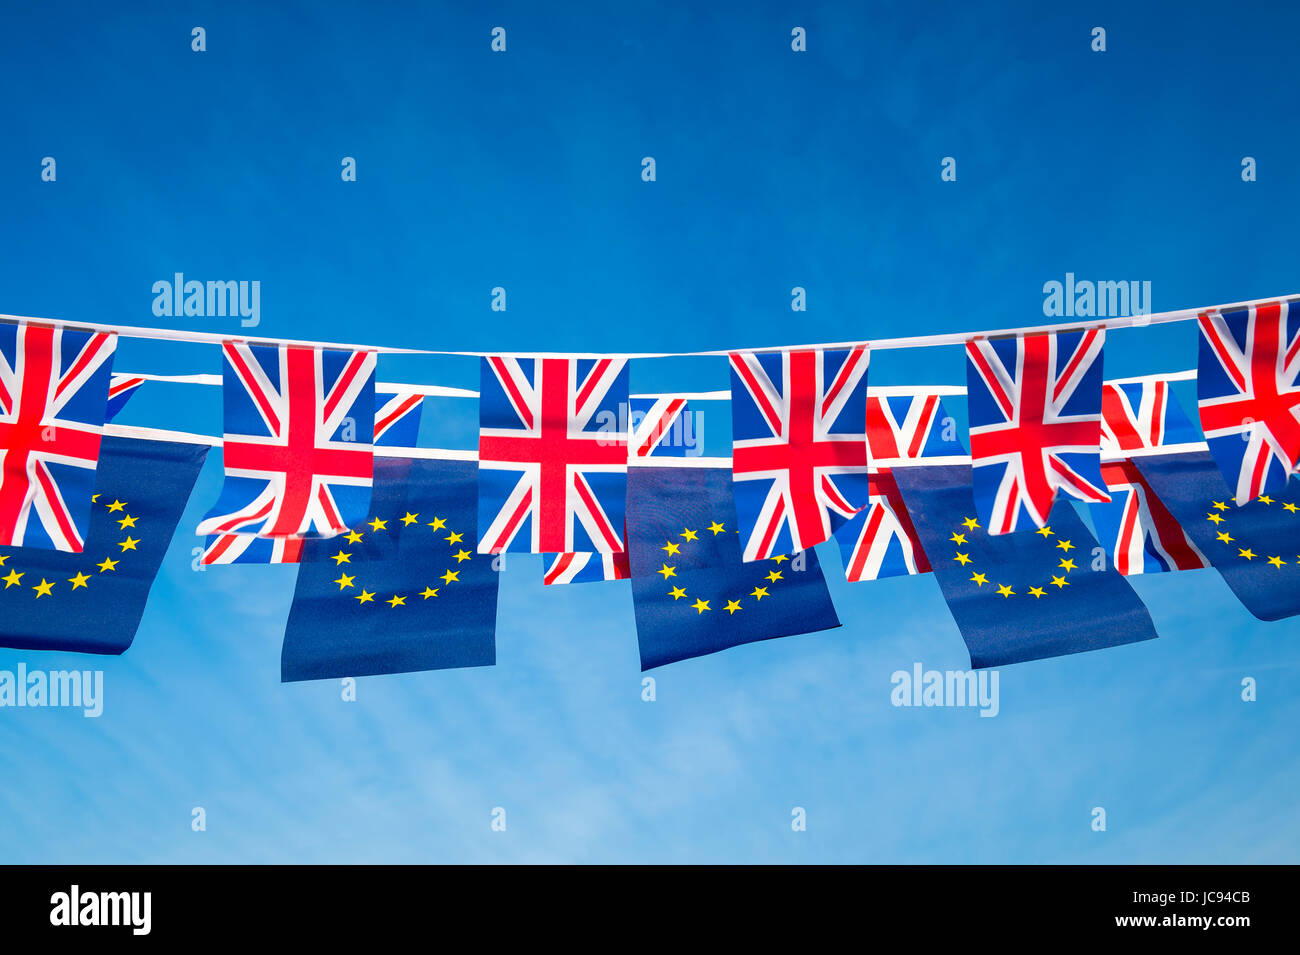 Unión Europea y británica bandera Union Jack bunting volando en el cielo azul brillante en una declaración de la UE Brexit negociaciones Foto de stock